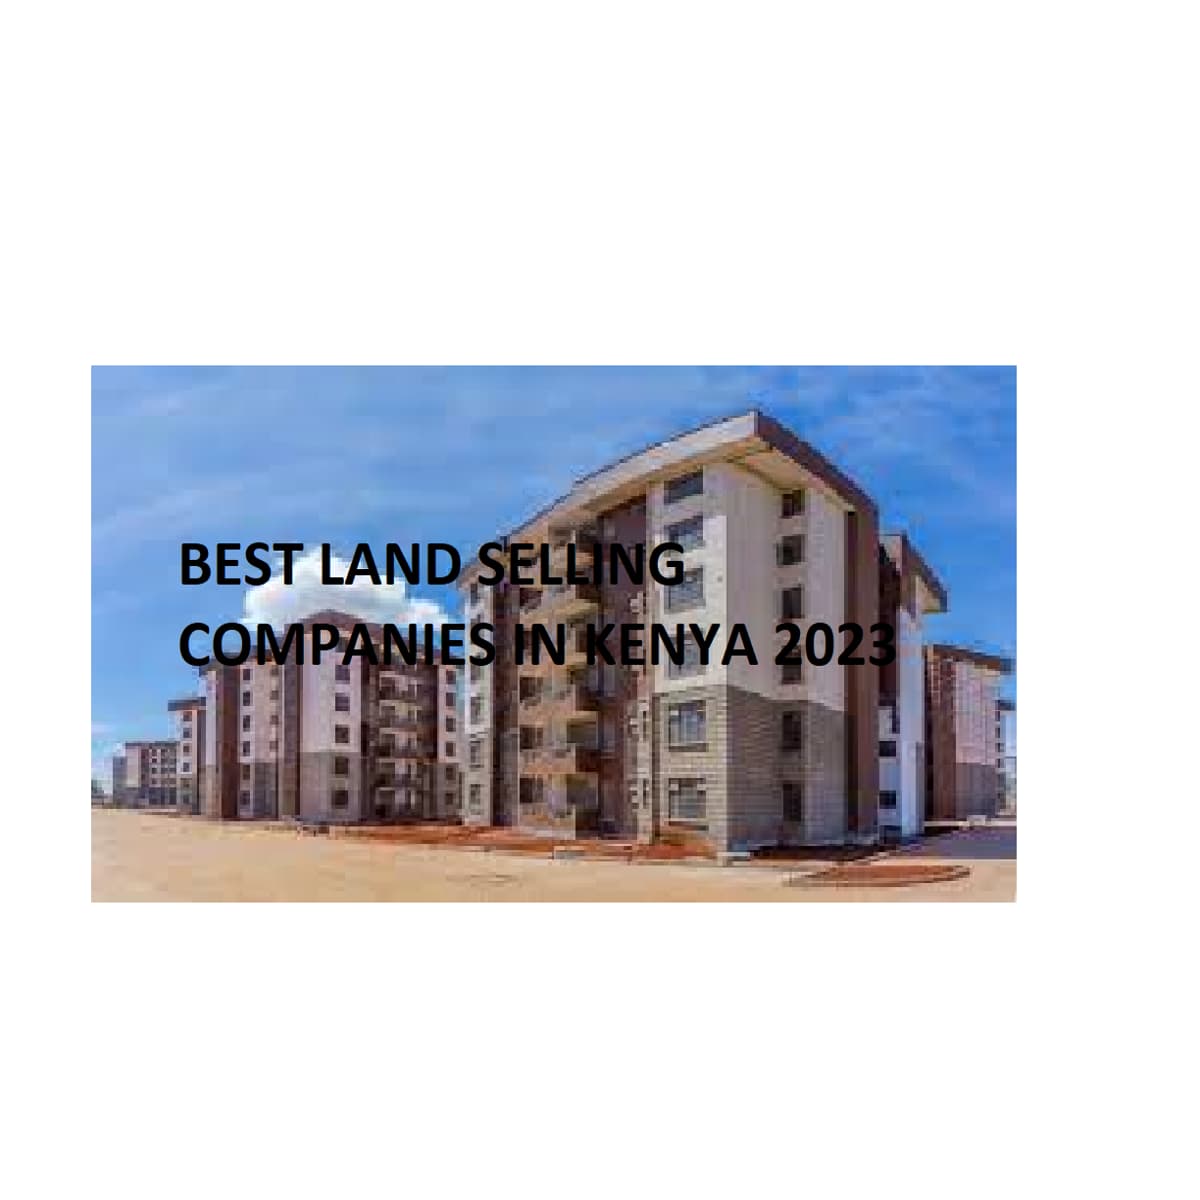 Best Land Selling Companies in Kenya